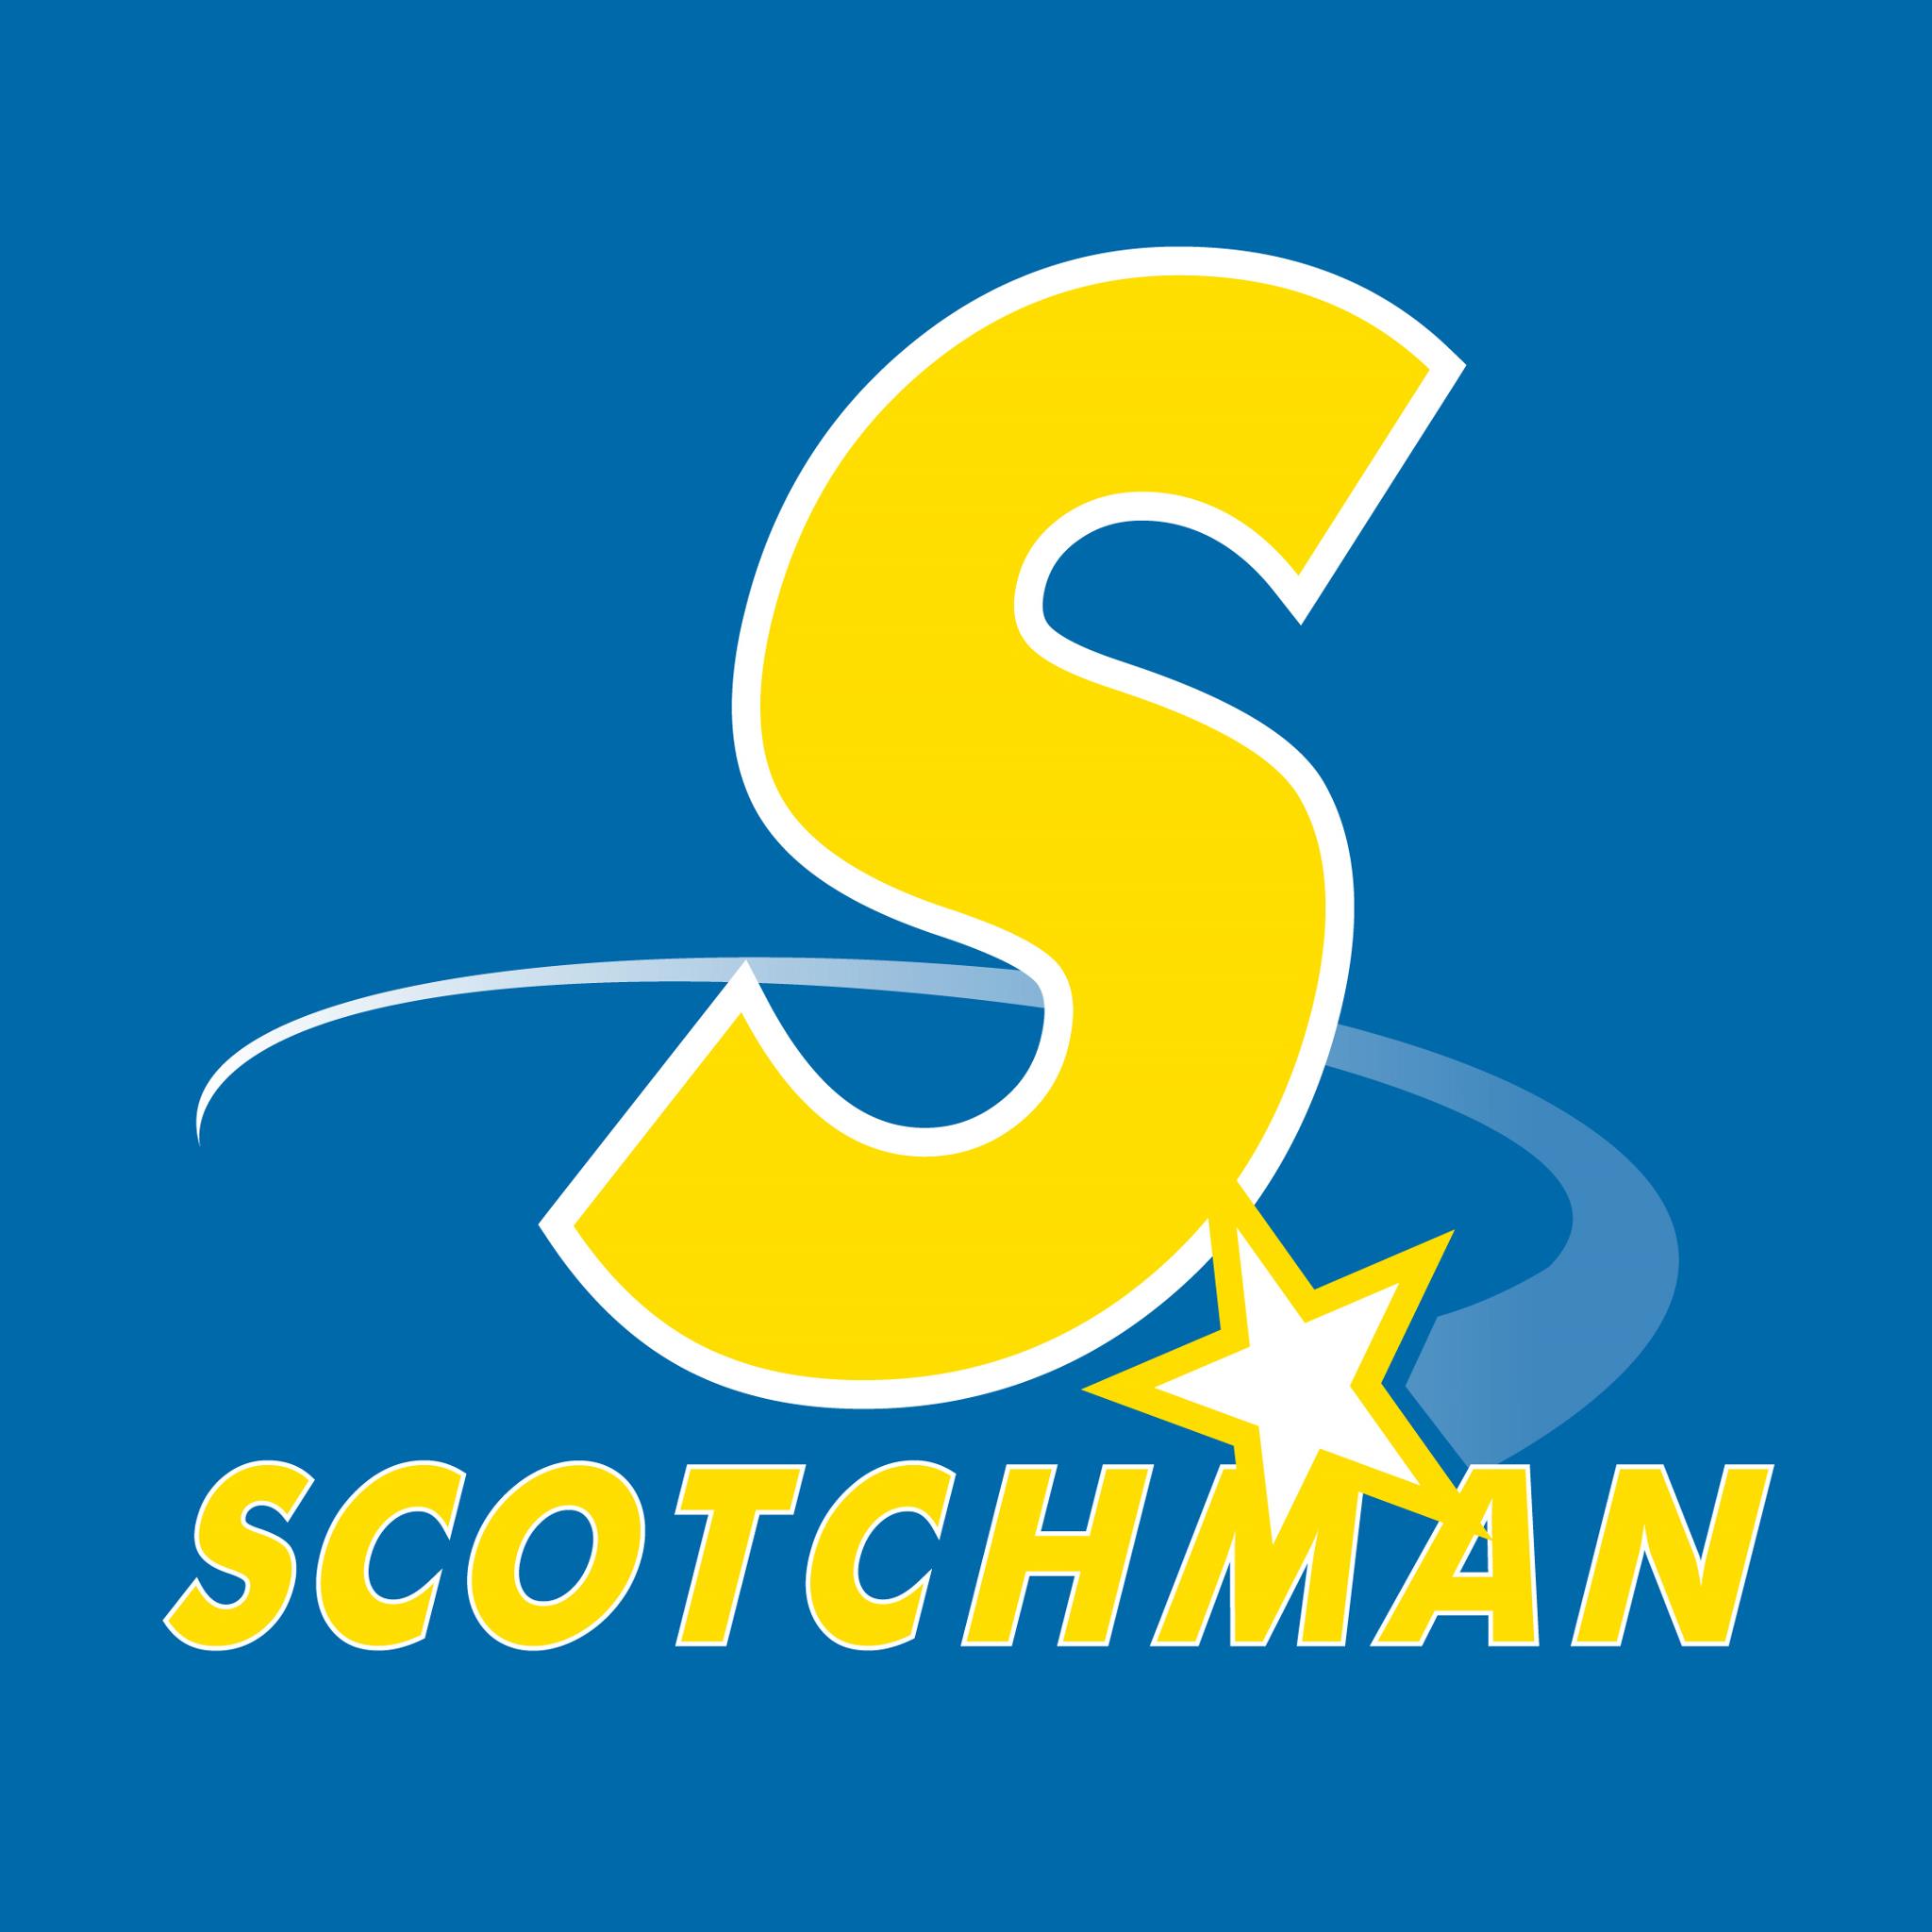 Scotchman logo